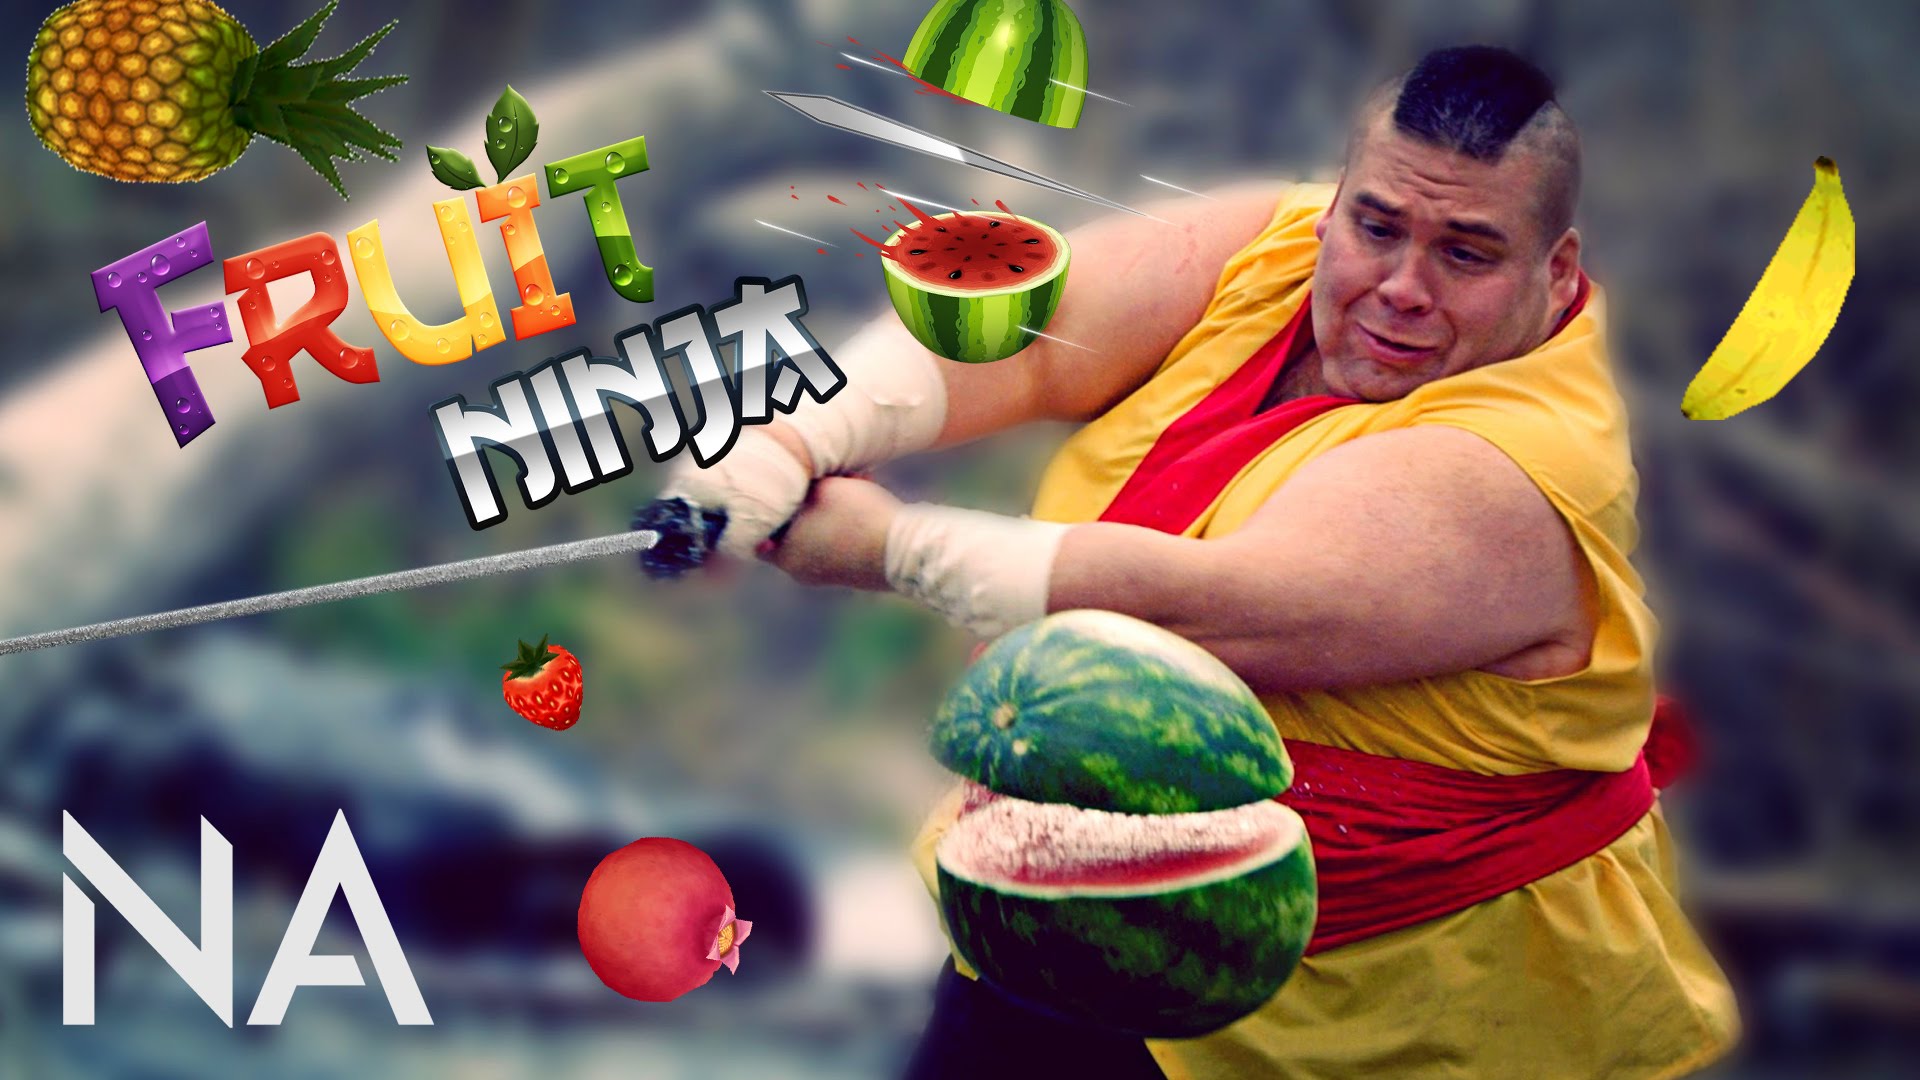 Sau Angry Birds, Fruit Ninja cũng đòi lên màn ảnh rộng